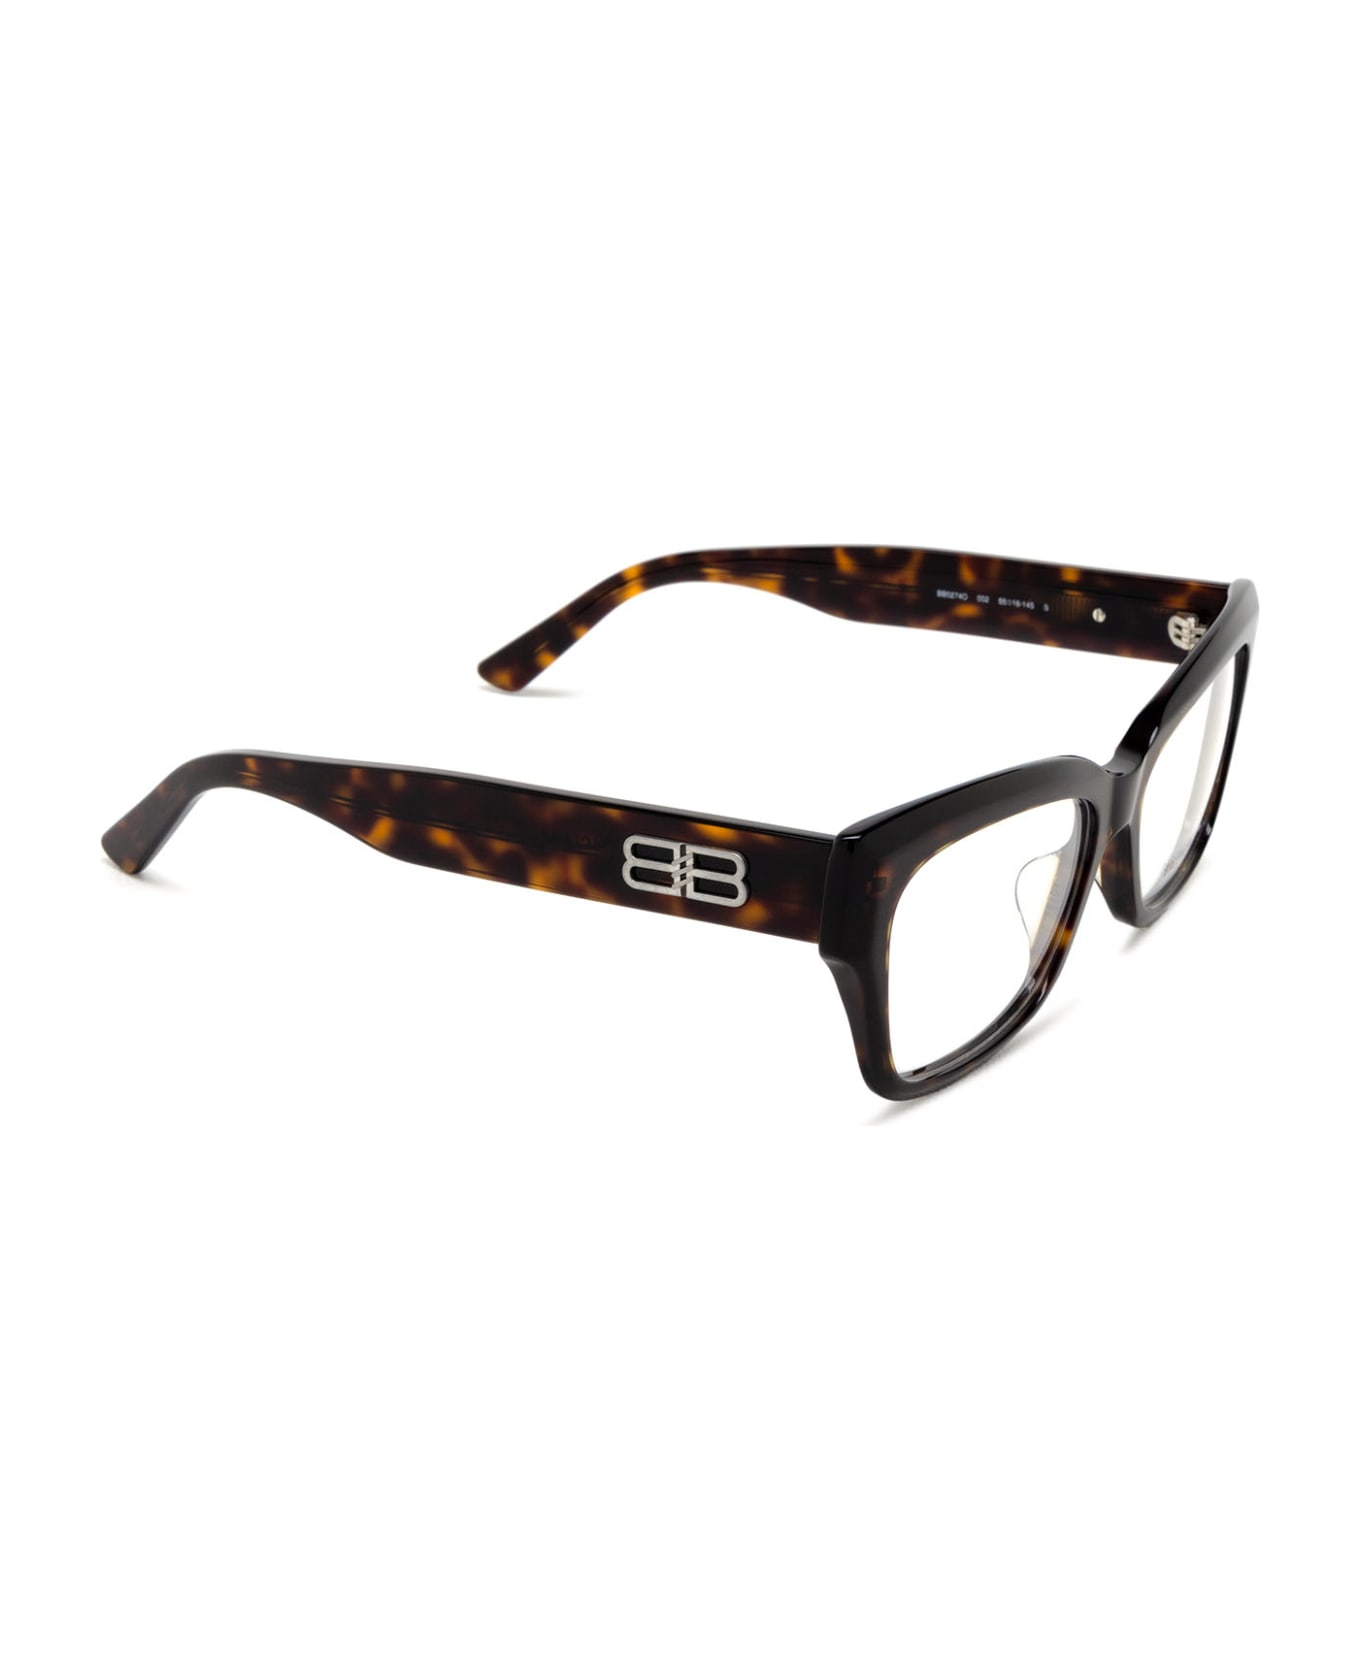 Balenciaga Eyewear Bb0274o Glasses - Havana アイウェア